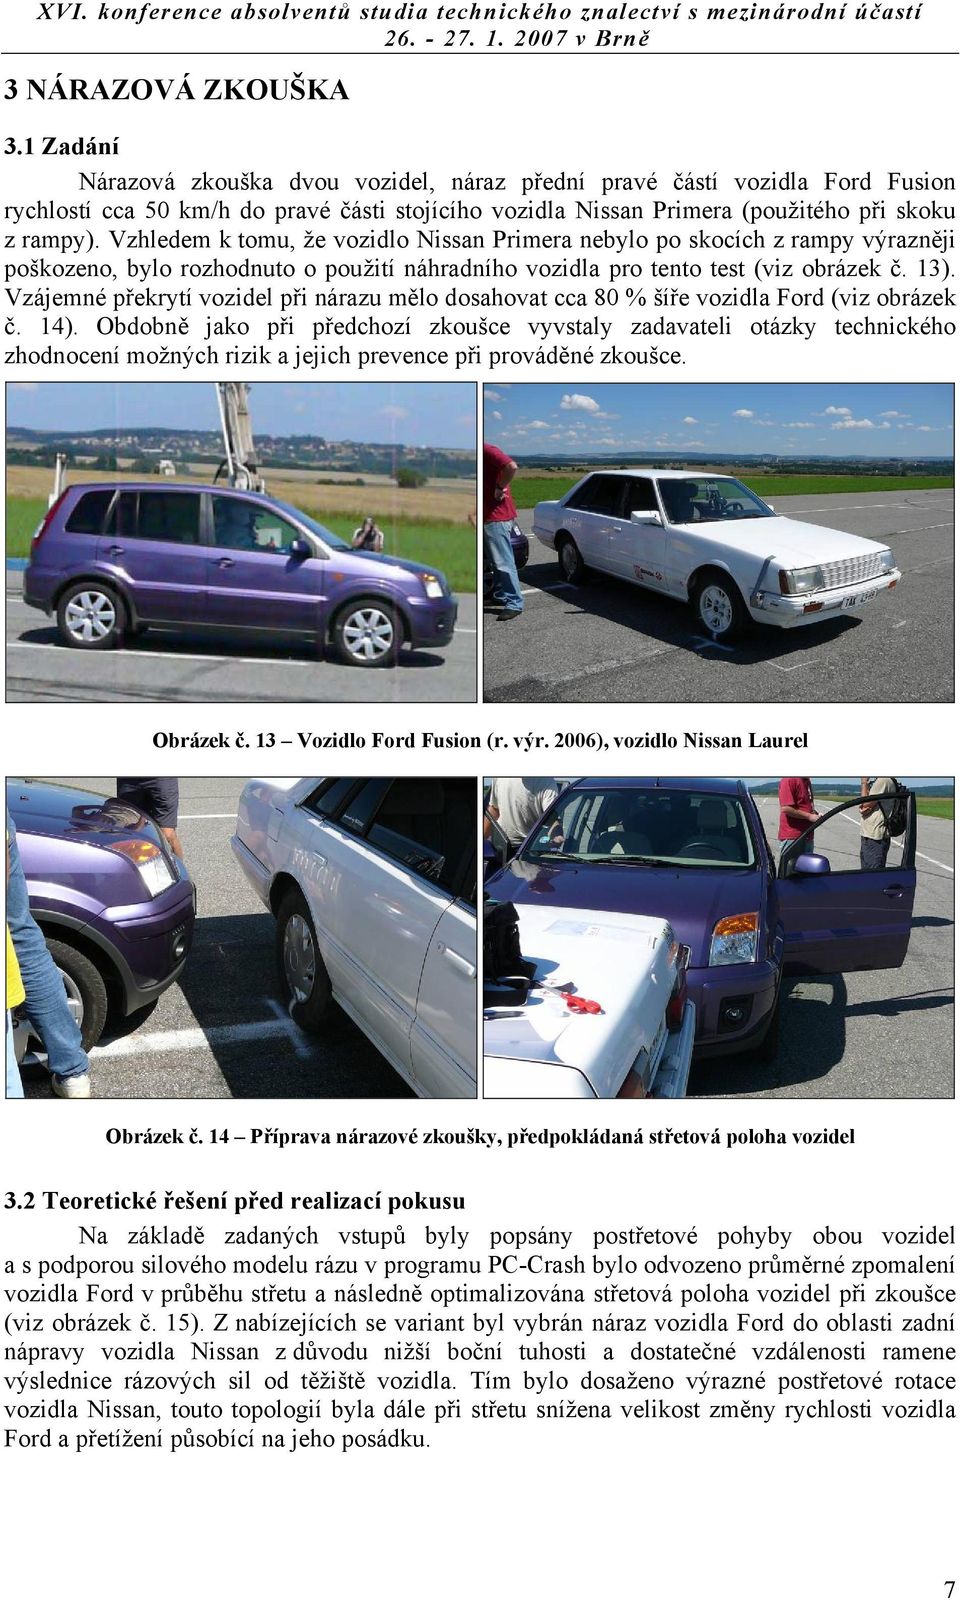 Vzhledem k tomu, že vozidlo Nissan Primera nebylo po skocích z rampy výrazněji poškozeno, bylo rozhodnuto o použití náhradního vozidla pro tento test (viz obrázek č. 13).